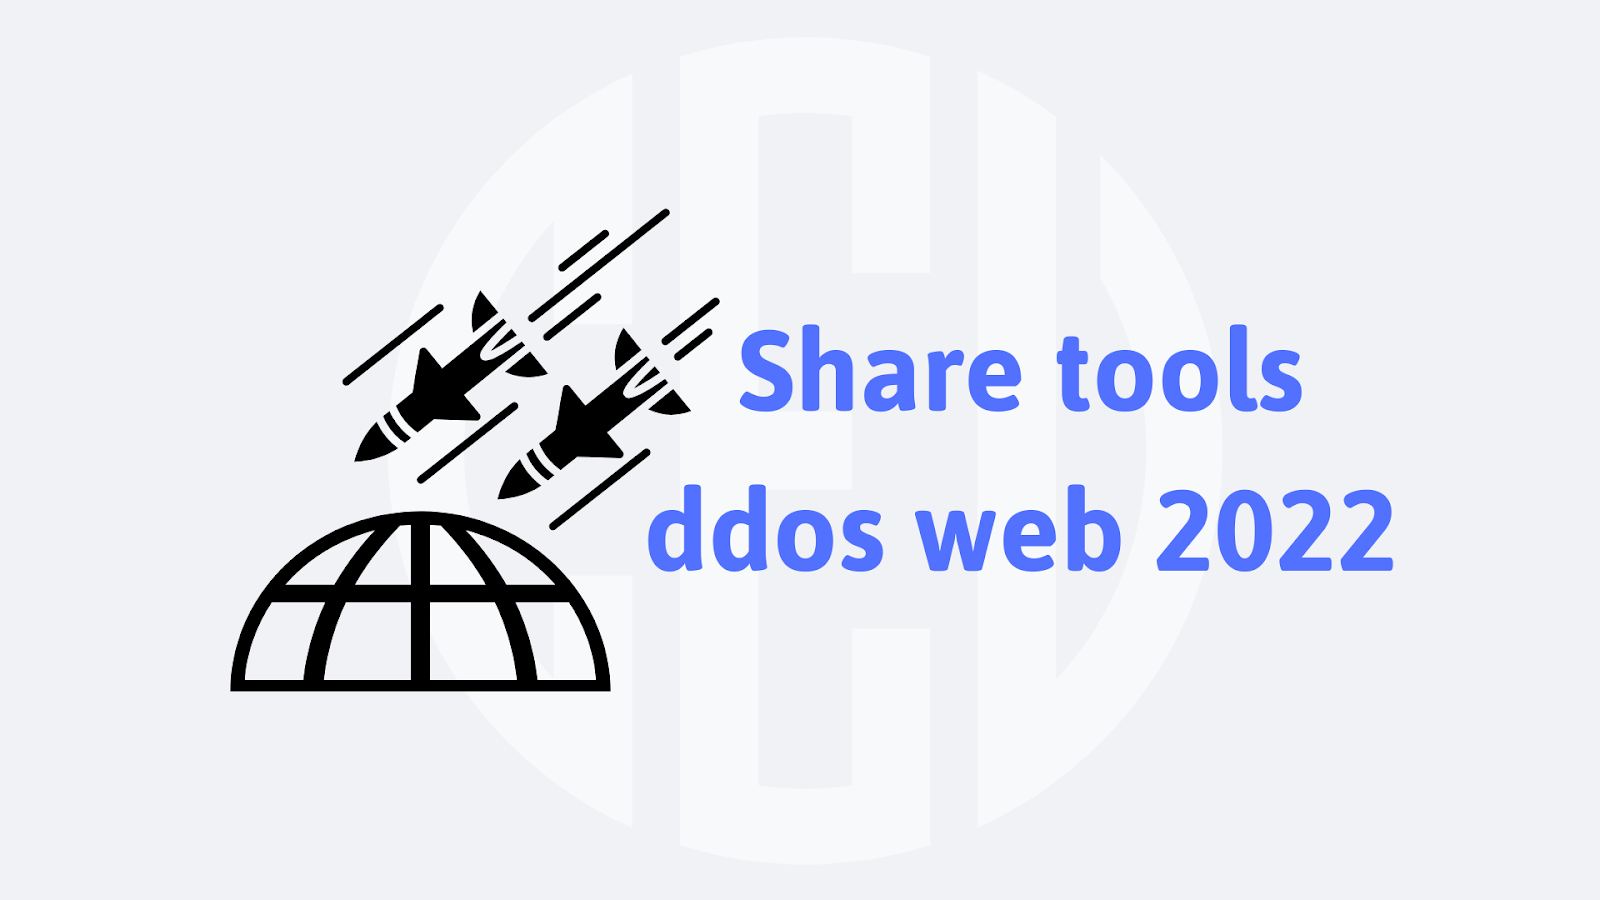 Share tools ddos web 2022.